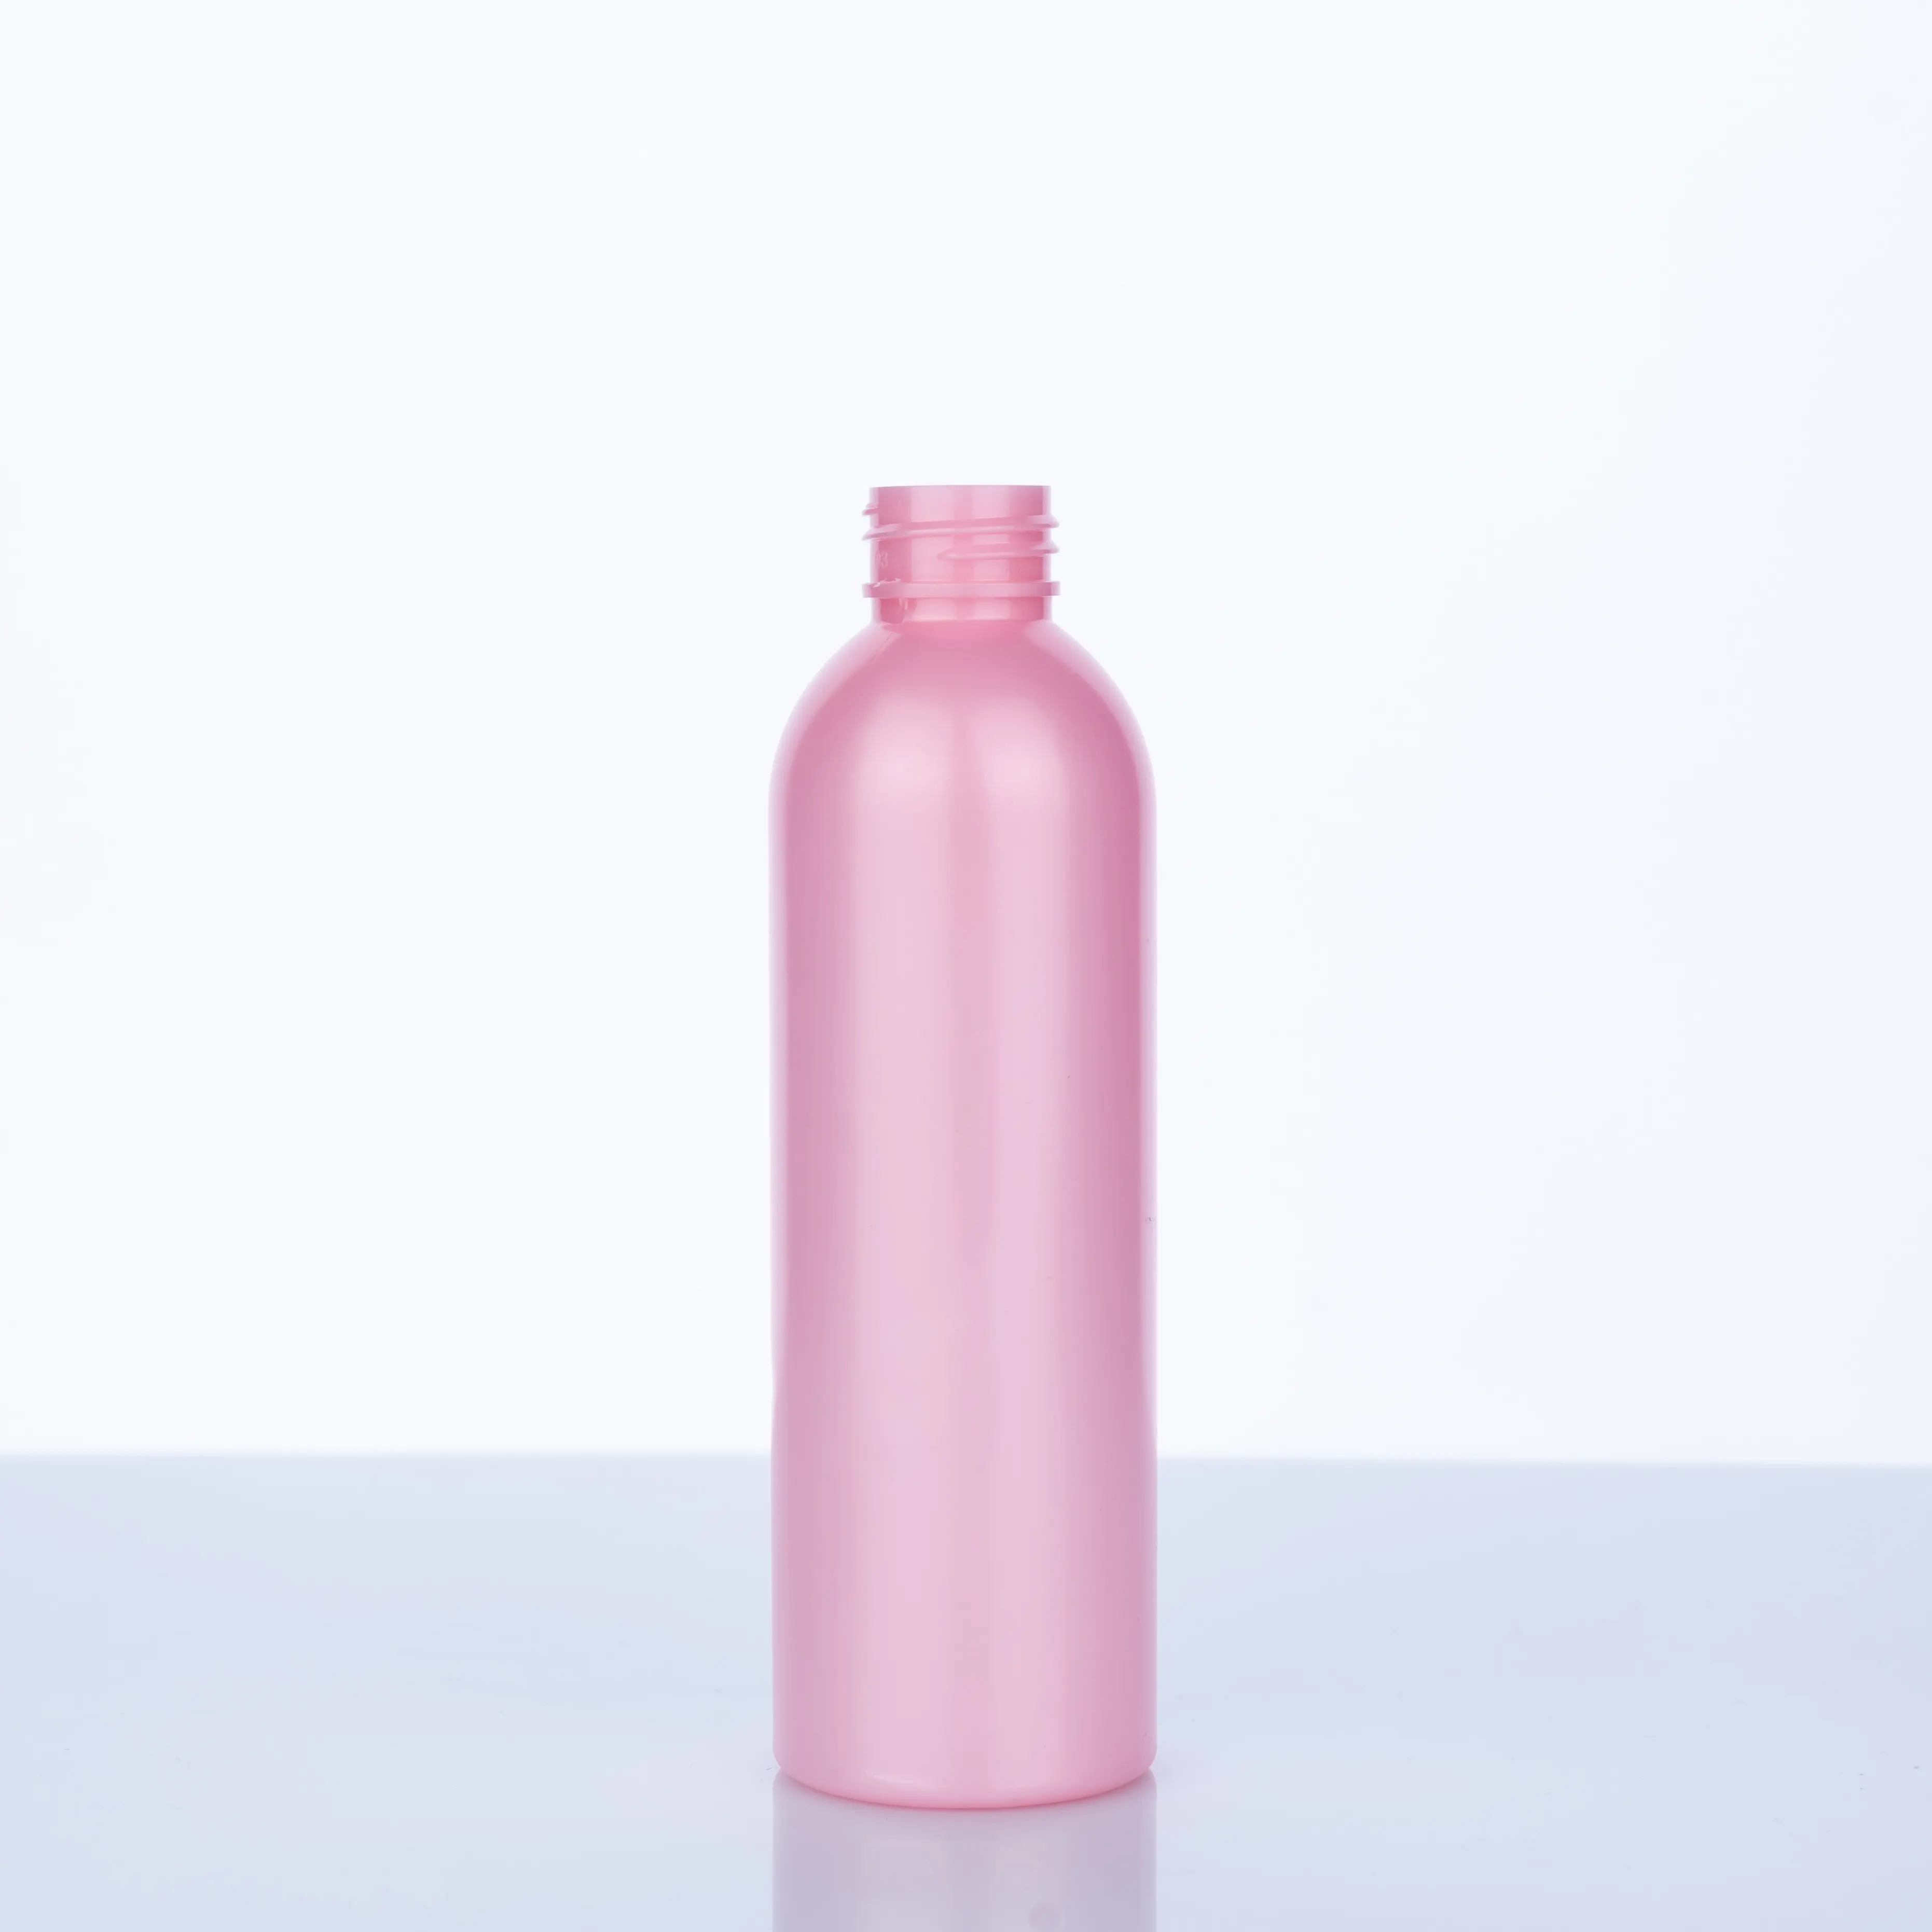 उच्च गुणवत्ता पालतू कॉस्मो दौर की बोतलें डिस्क शीर्ष टोपी या अन्य टोपियां के साथ प्लास्टिक शैंपू की बोतल और स्प्रे की बोतल